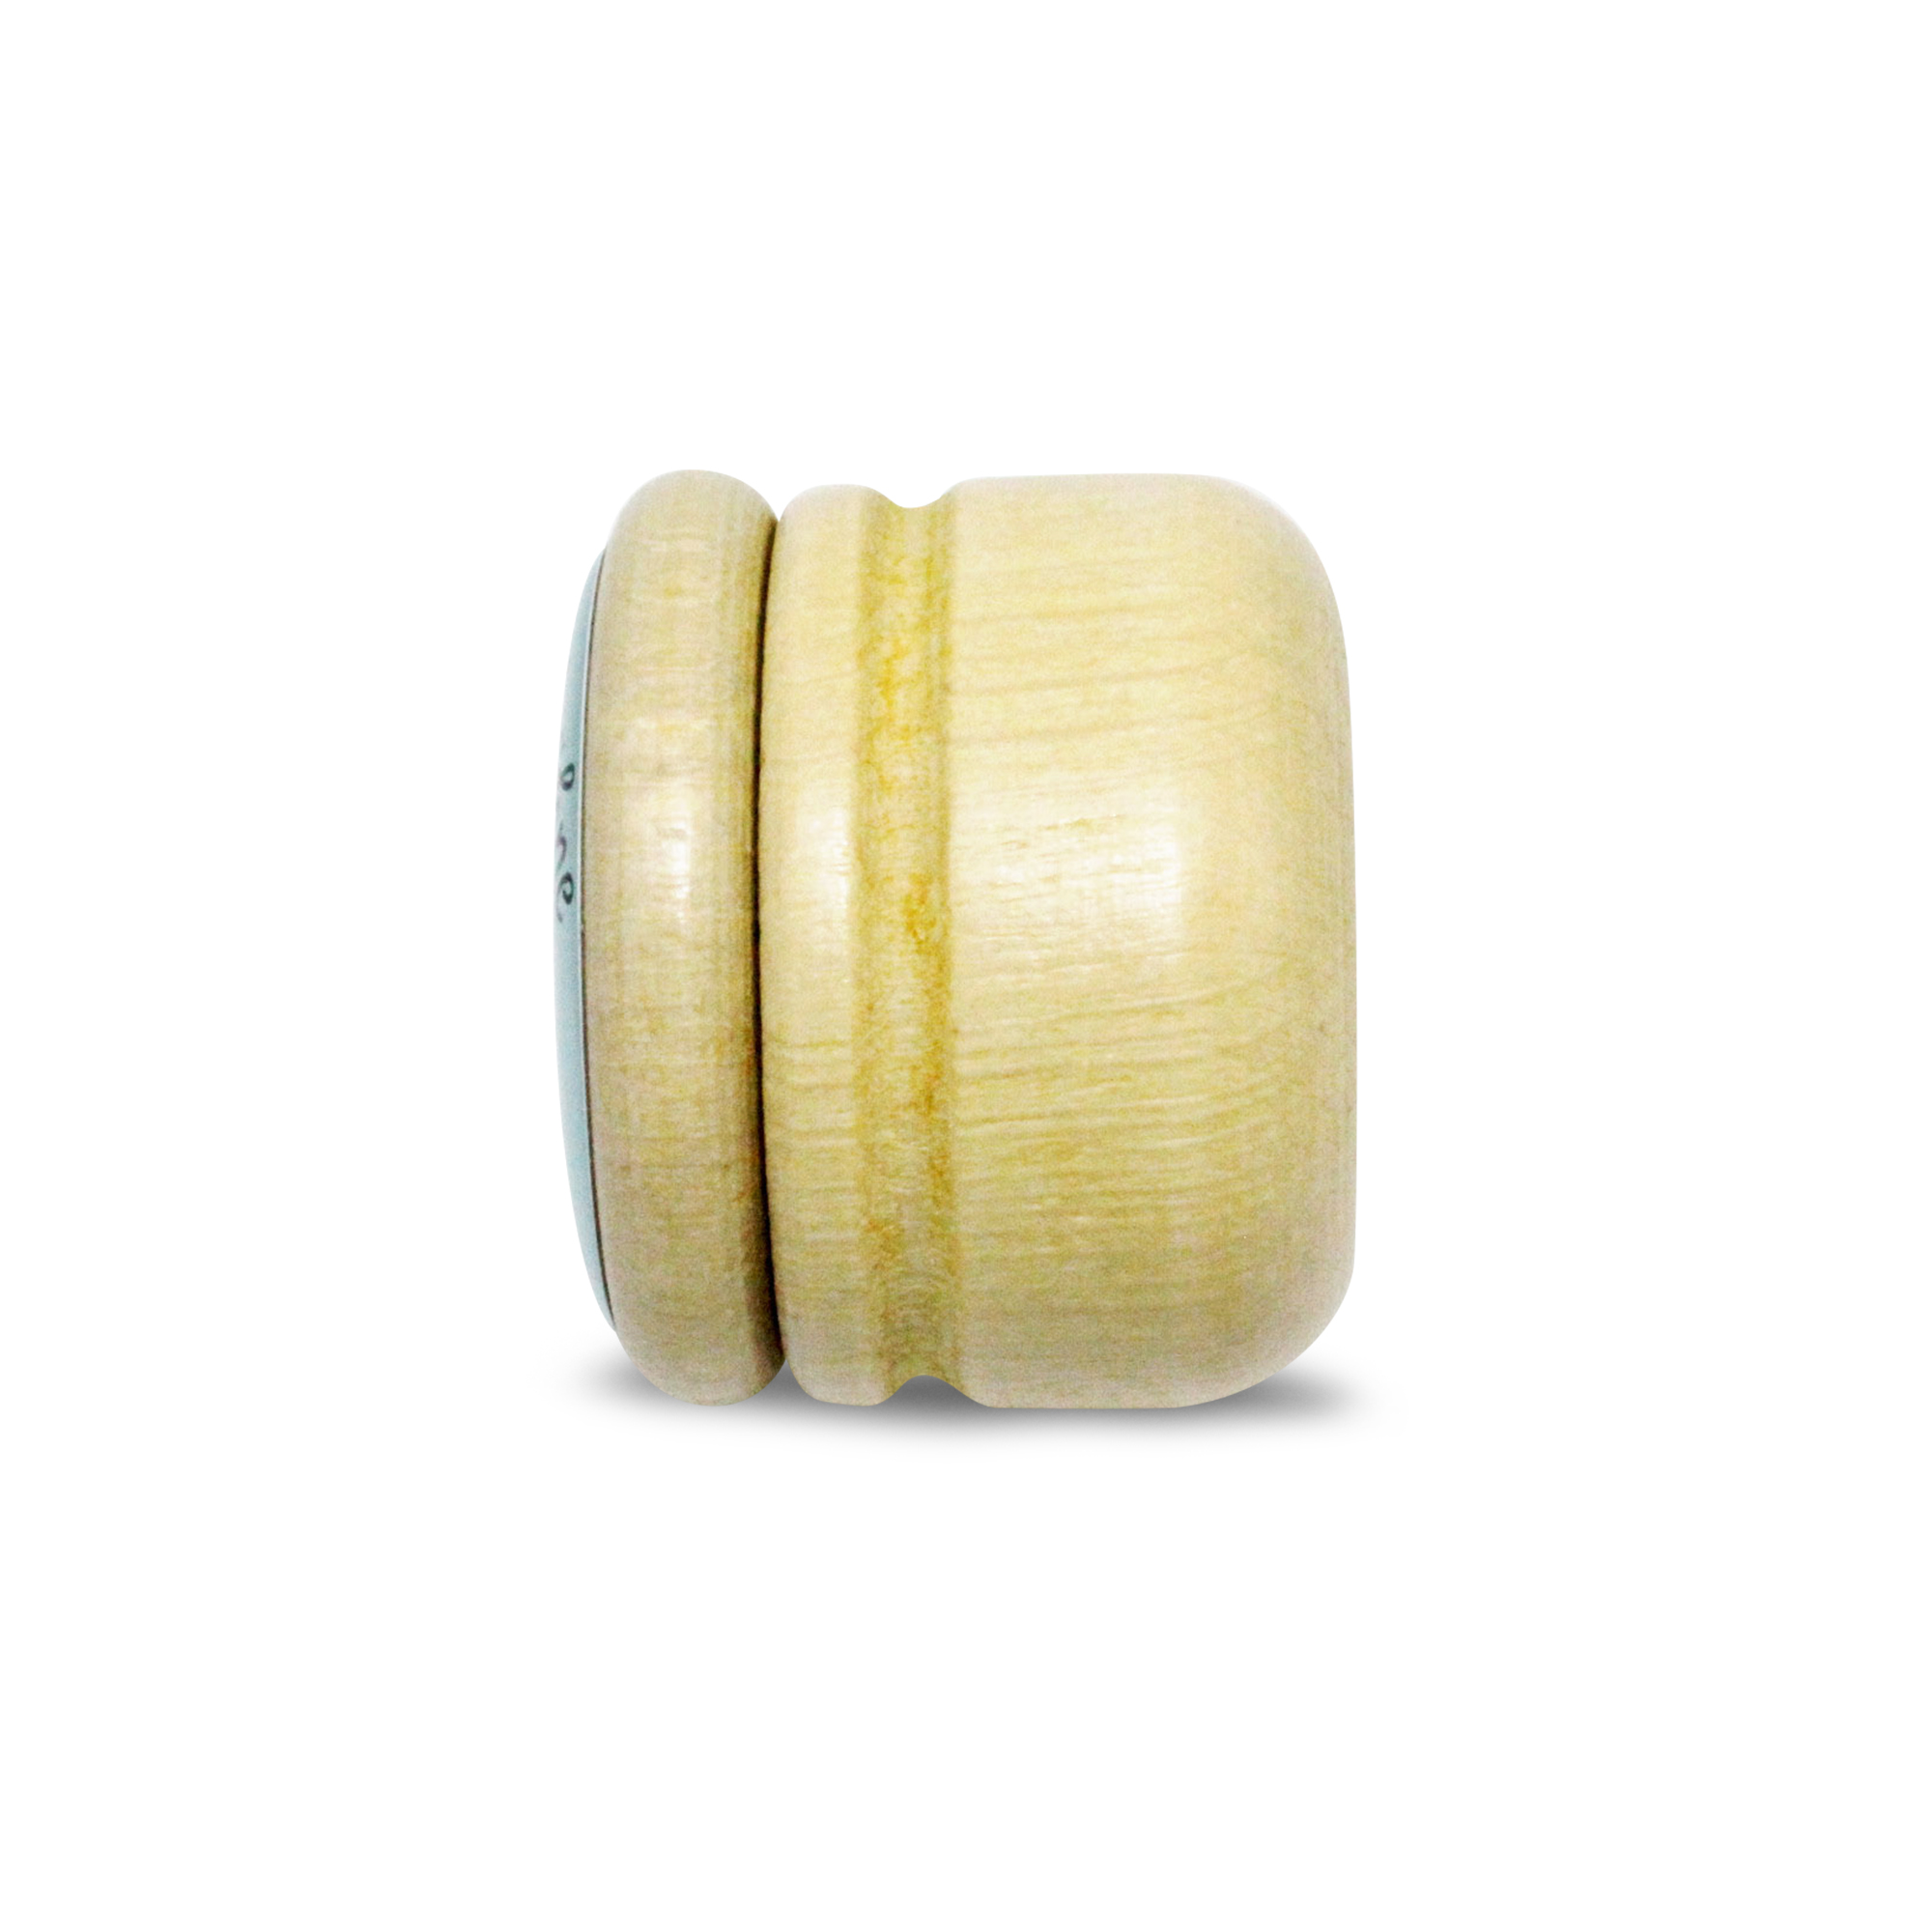 Milchzahndose Faultier Zahndose Milchzähne Bilderdose aus Holz mit Drehverschluss 44 mm ( Faultier )- 7009